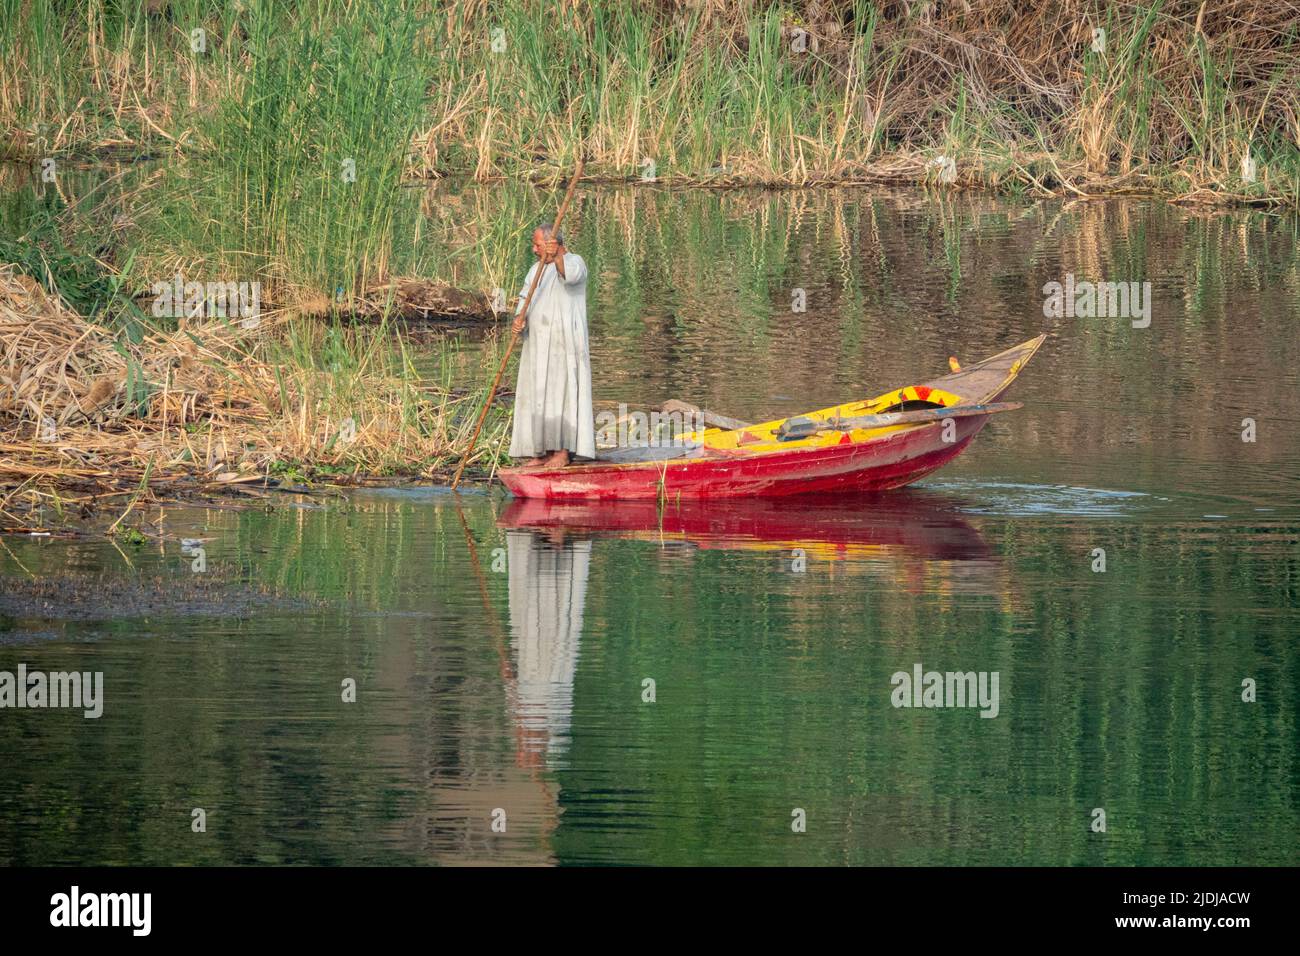 Un solitario pescador del Nilo sosteniendo un palo largo en un barco de pesca de madera de colores brillantes en un pequeño arroyo con agua suavemente ondulada y reflejos Foto de stock